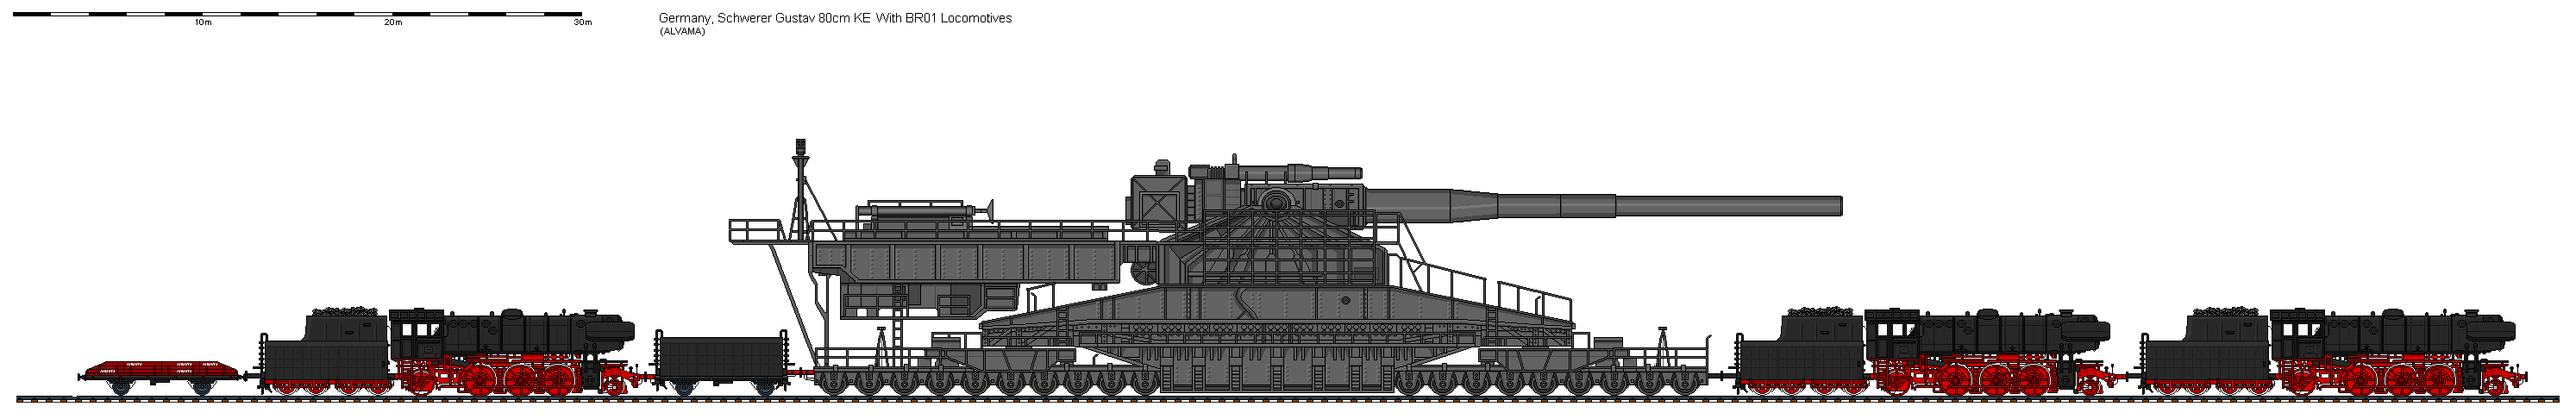 1/350 Scale Schwerer Gustav 80cm Railroad Gun (DUUFX6UKH) by wachapman